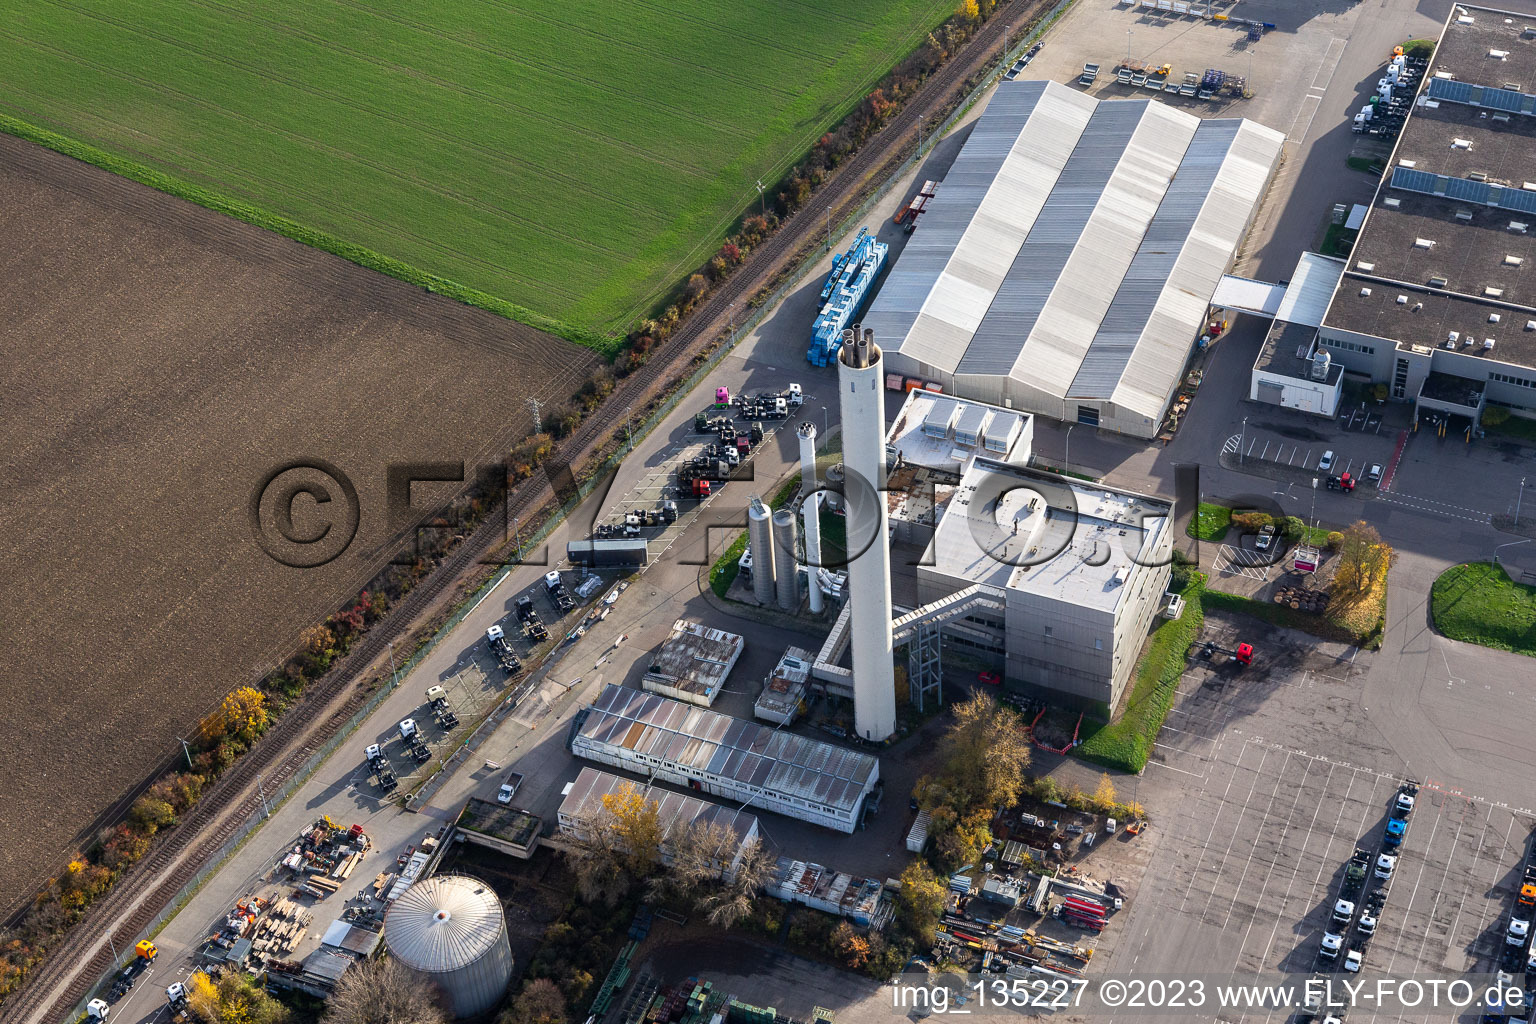 Vue aérienne de Centrale électrique Daimer Truck AG à Wörth am Rhein dans le département Rhénanie-Palatinat, Allemagne